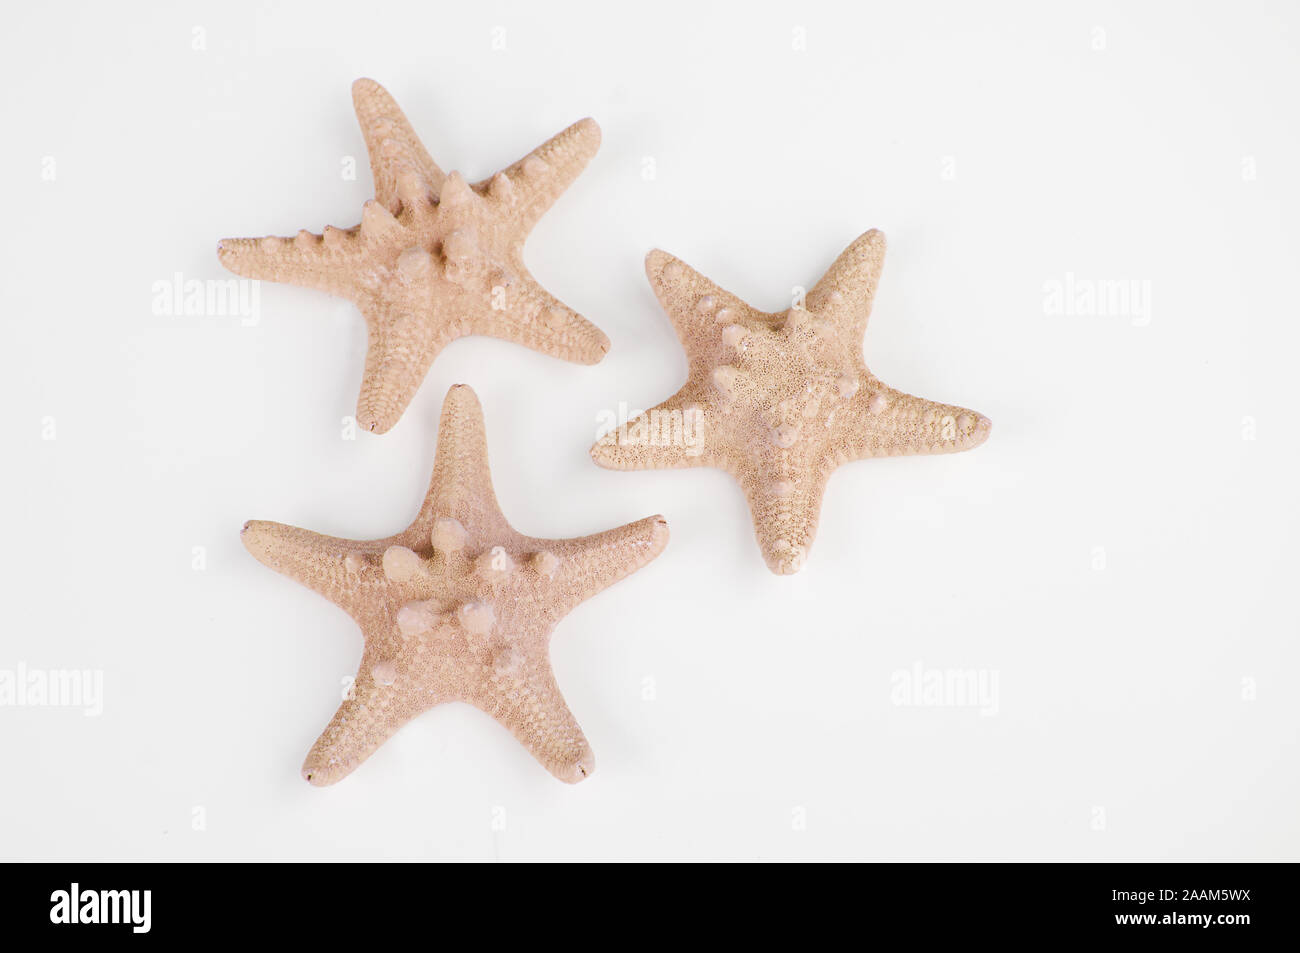 Tre peach sabbia colorata starfish isolata su uno sfondo luminoso. Carino gusci per tema costiere e decor di spiaggia ancora in vita. Foto Stock